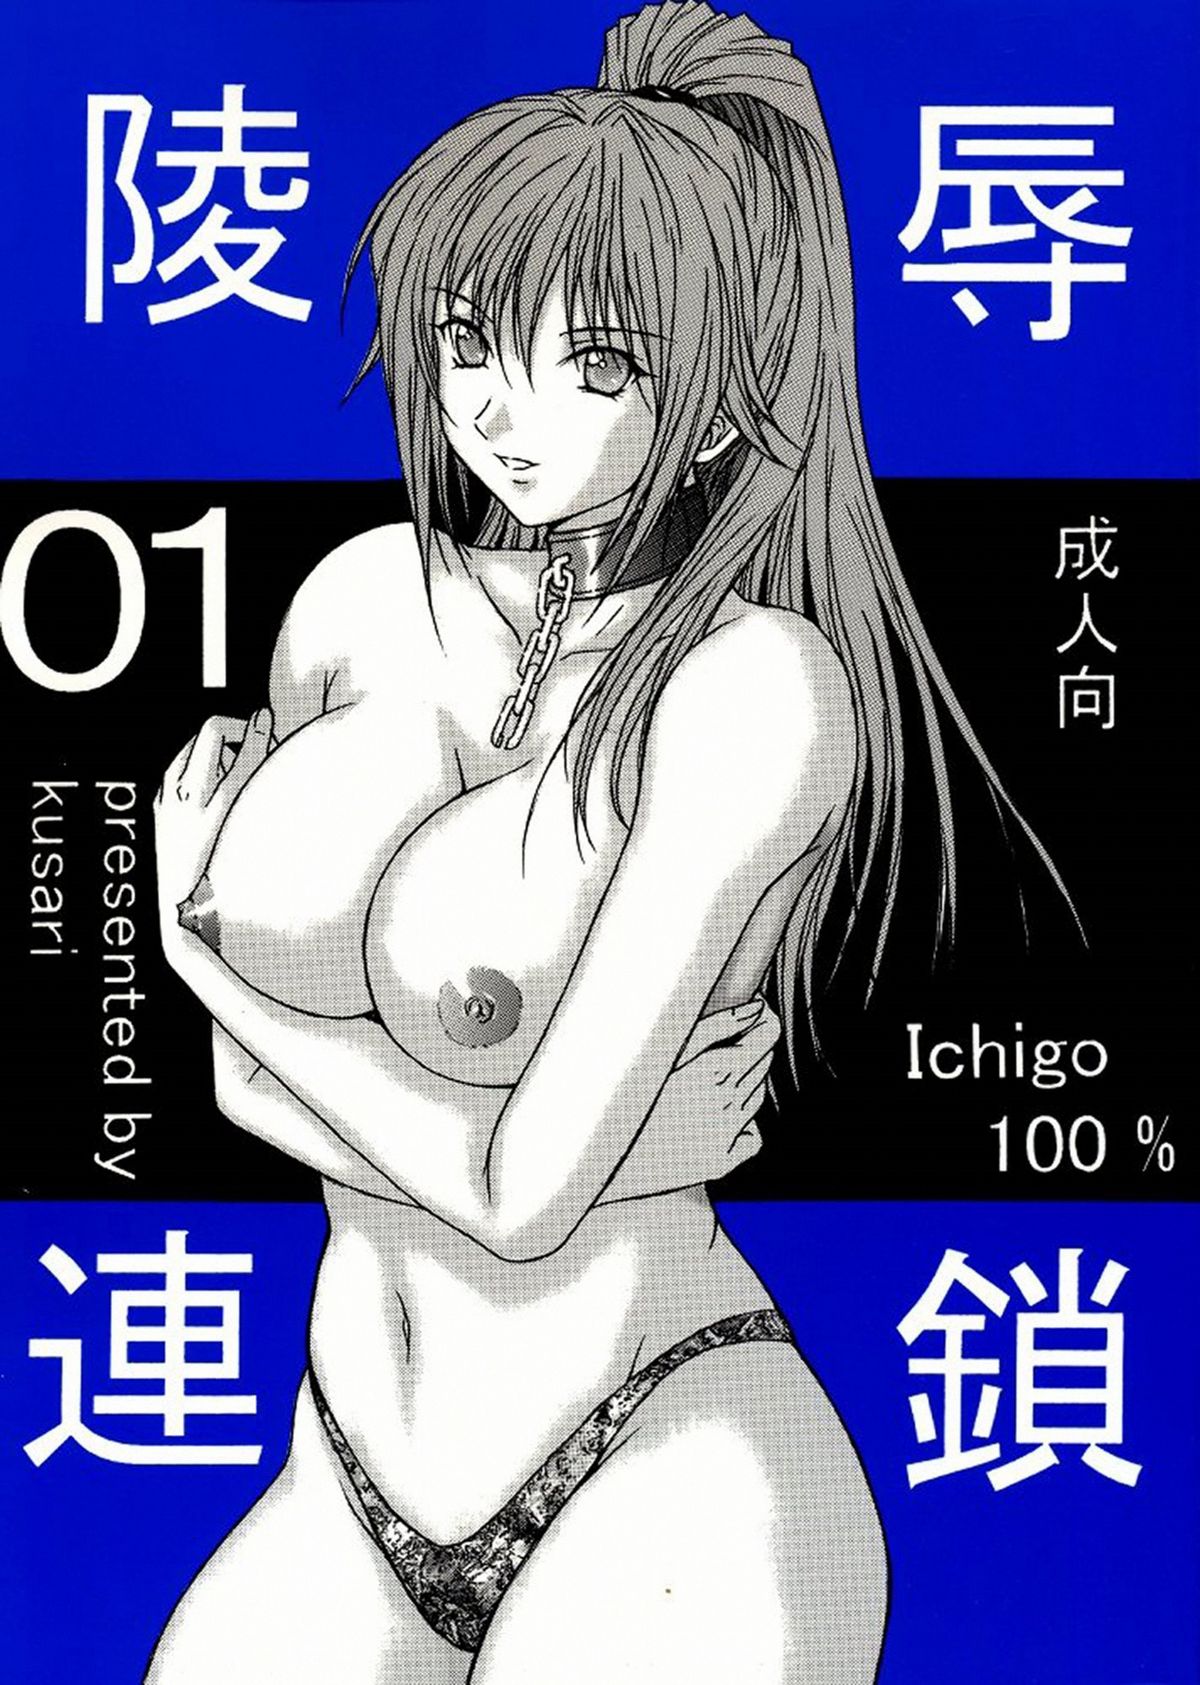 [KUSARI (Aoi Mikku)] Ryoujoku Rensa 01 (Ichigo 100%) [german/deutsch] 